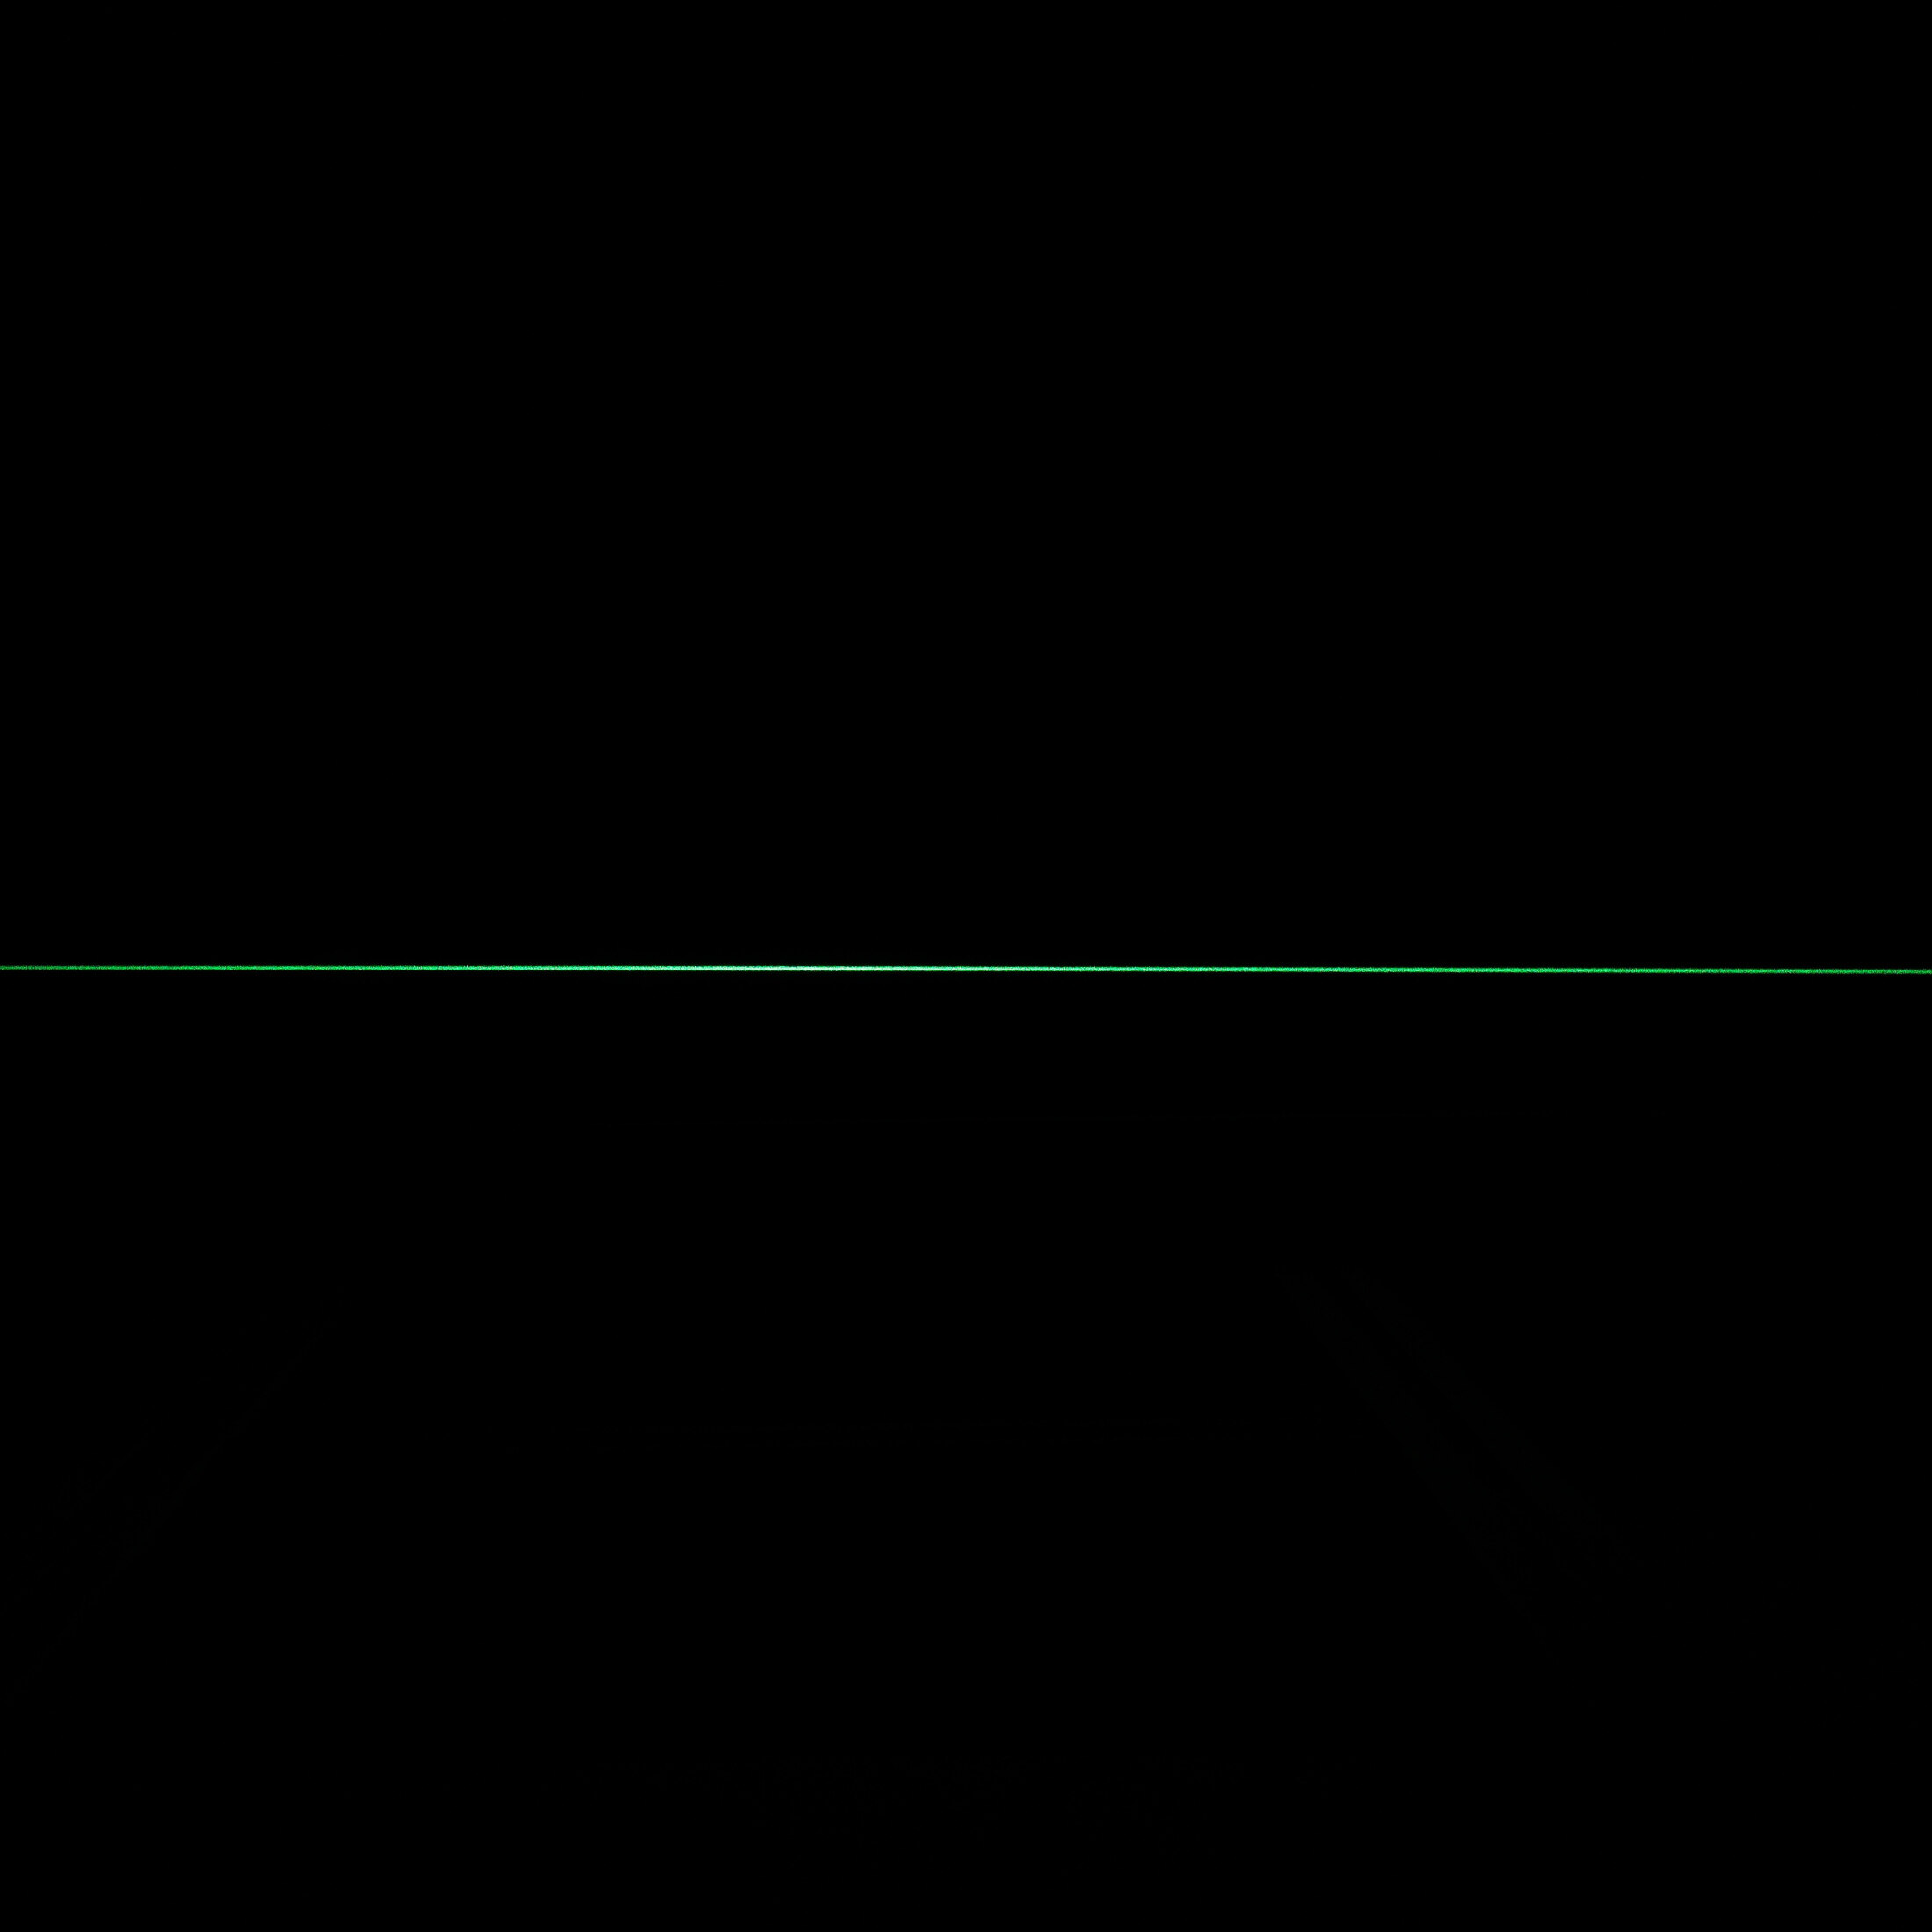 Linienlaser, grün, 532 nm, 90 °, 5 mW, Ø22x130 mm, Laserklasse 1, Fokus einstellbar